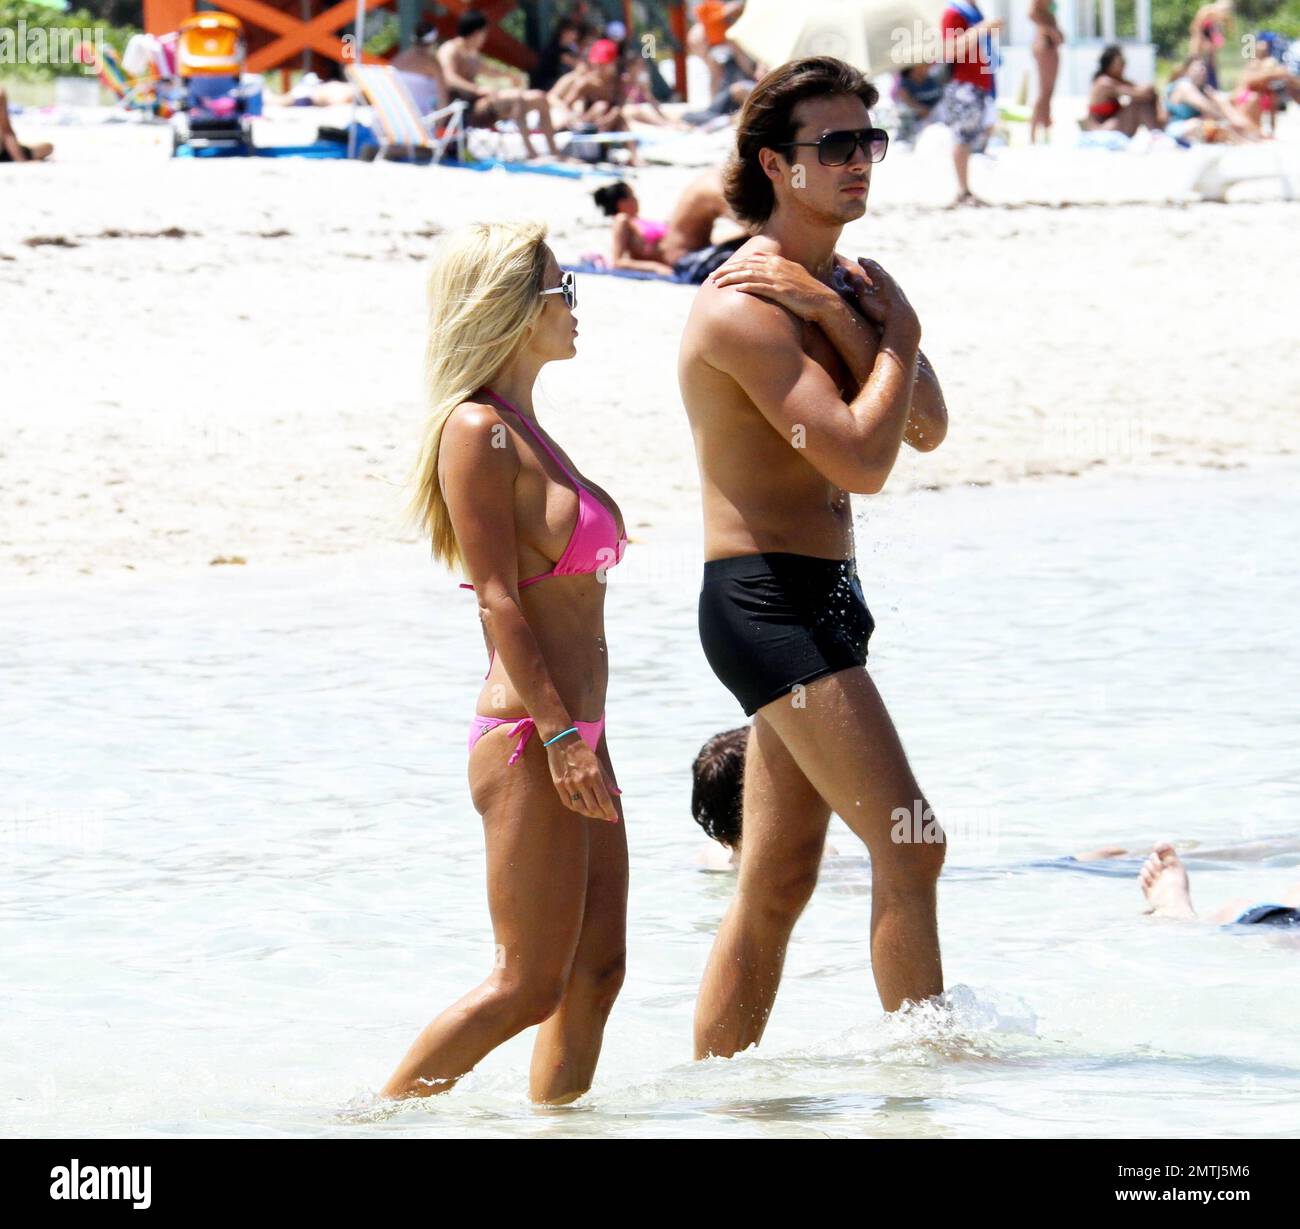 Shauna Sand y su esposo Laurent Homburger parecen estar disfrutando de una  tarde de playa juntos a pesar de los recientes informes de un matrimonio  turbulento y violencia doméstica. Shauna se puso